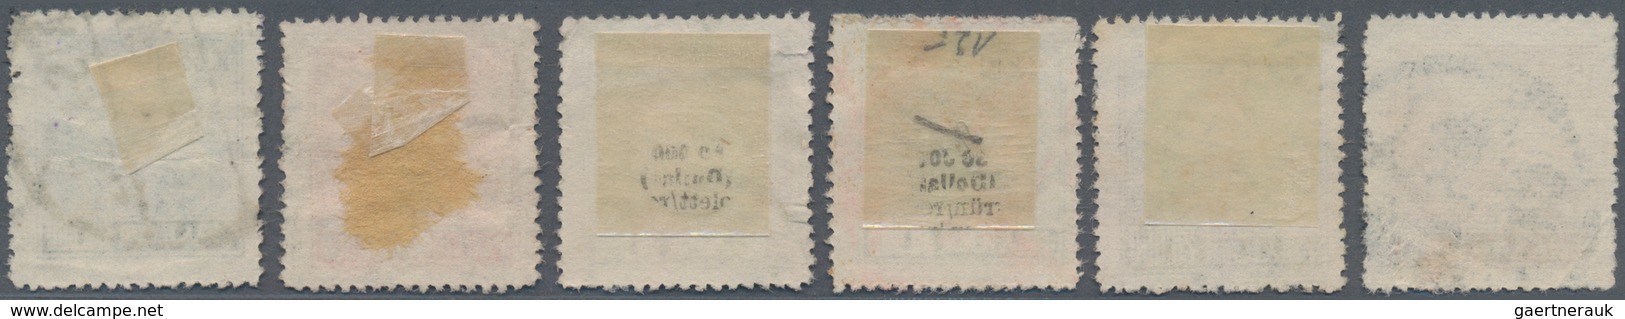 China - Volksrepublik: 1951, Tiananmen Definitives R5, Used, $50000 With 2mm Tear Upper Left Corner, - Briefe U. Dokumente